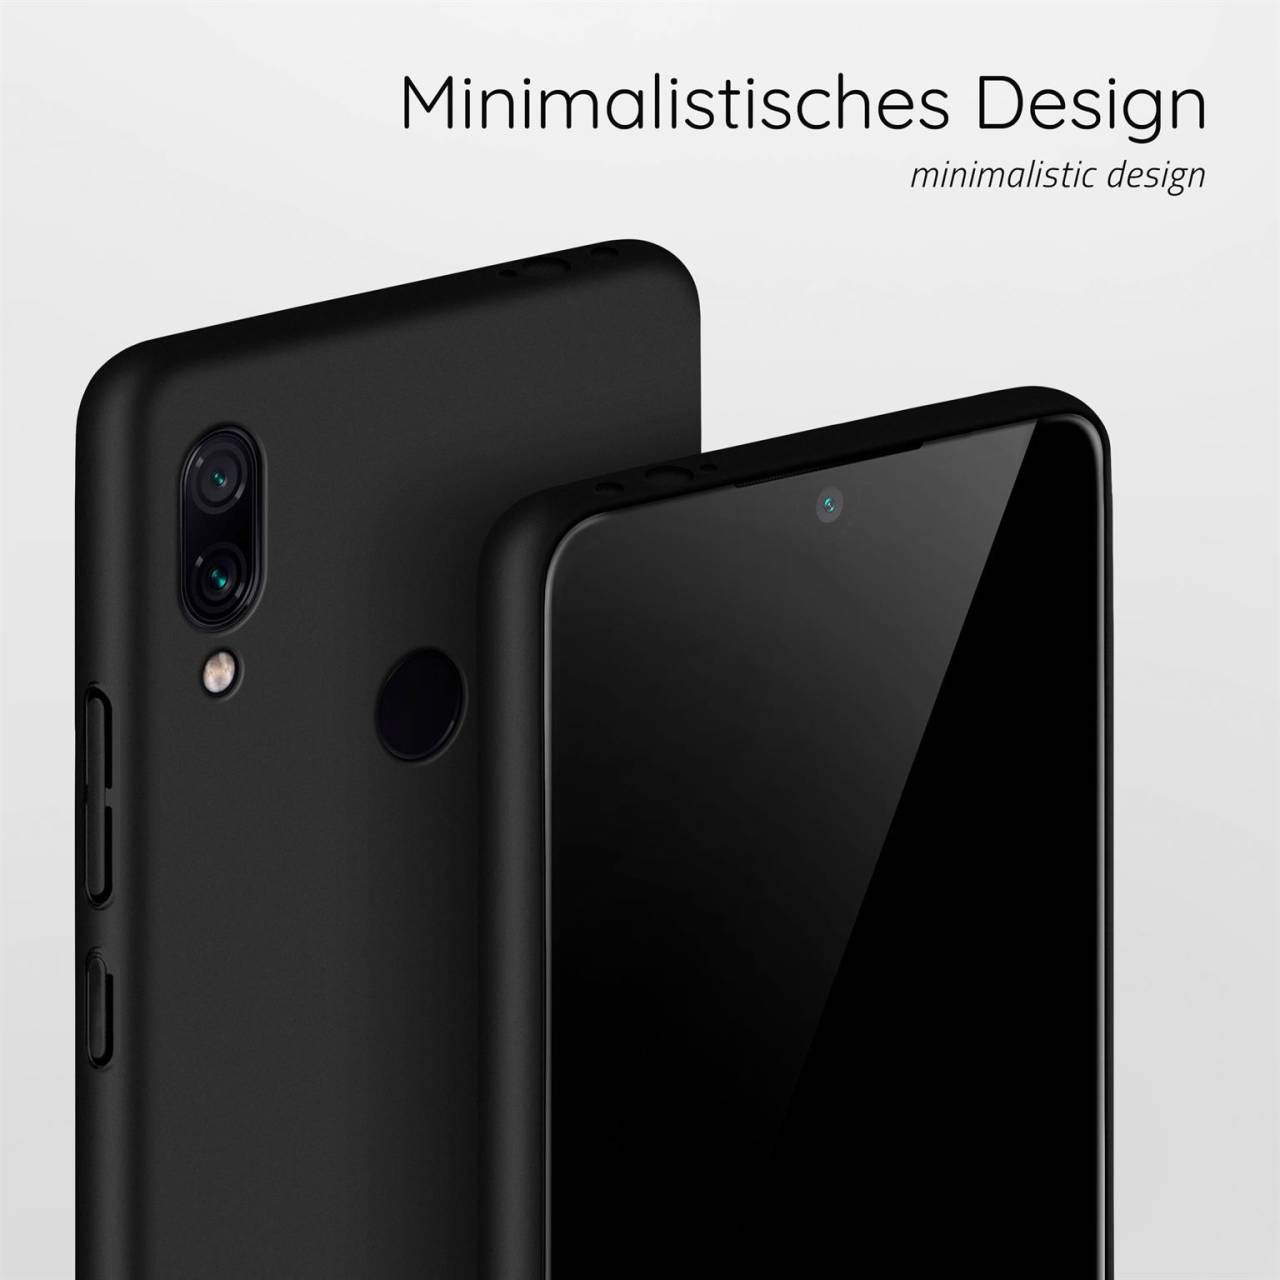 moex Alpha Case für Xiaomi Redmi Note 7 – Extrem dünne, minimalistische Hülle in seidenmatt